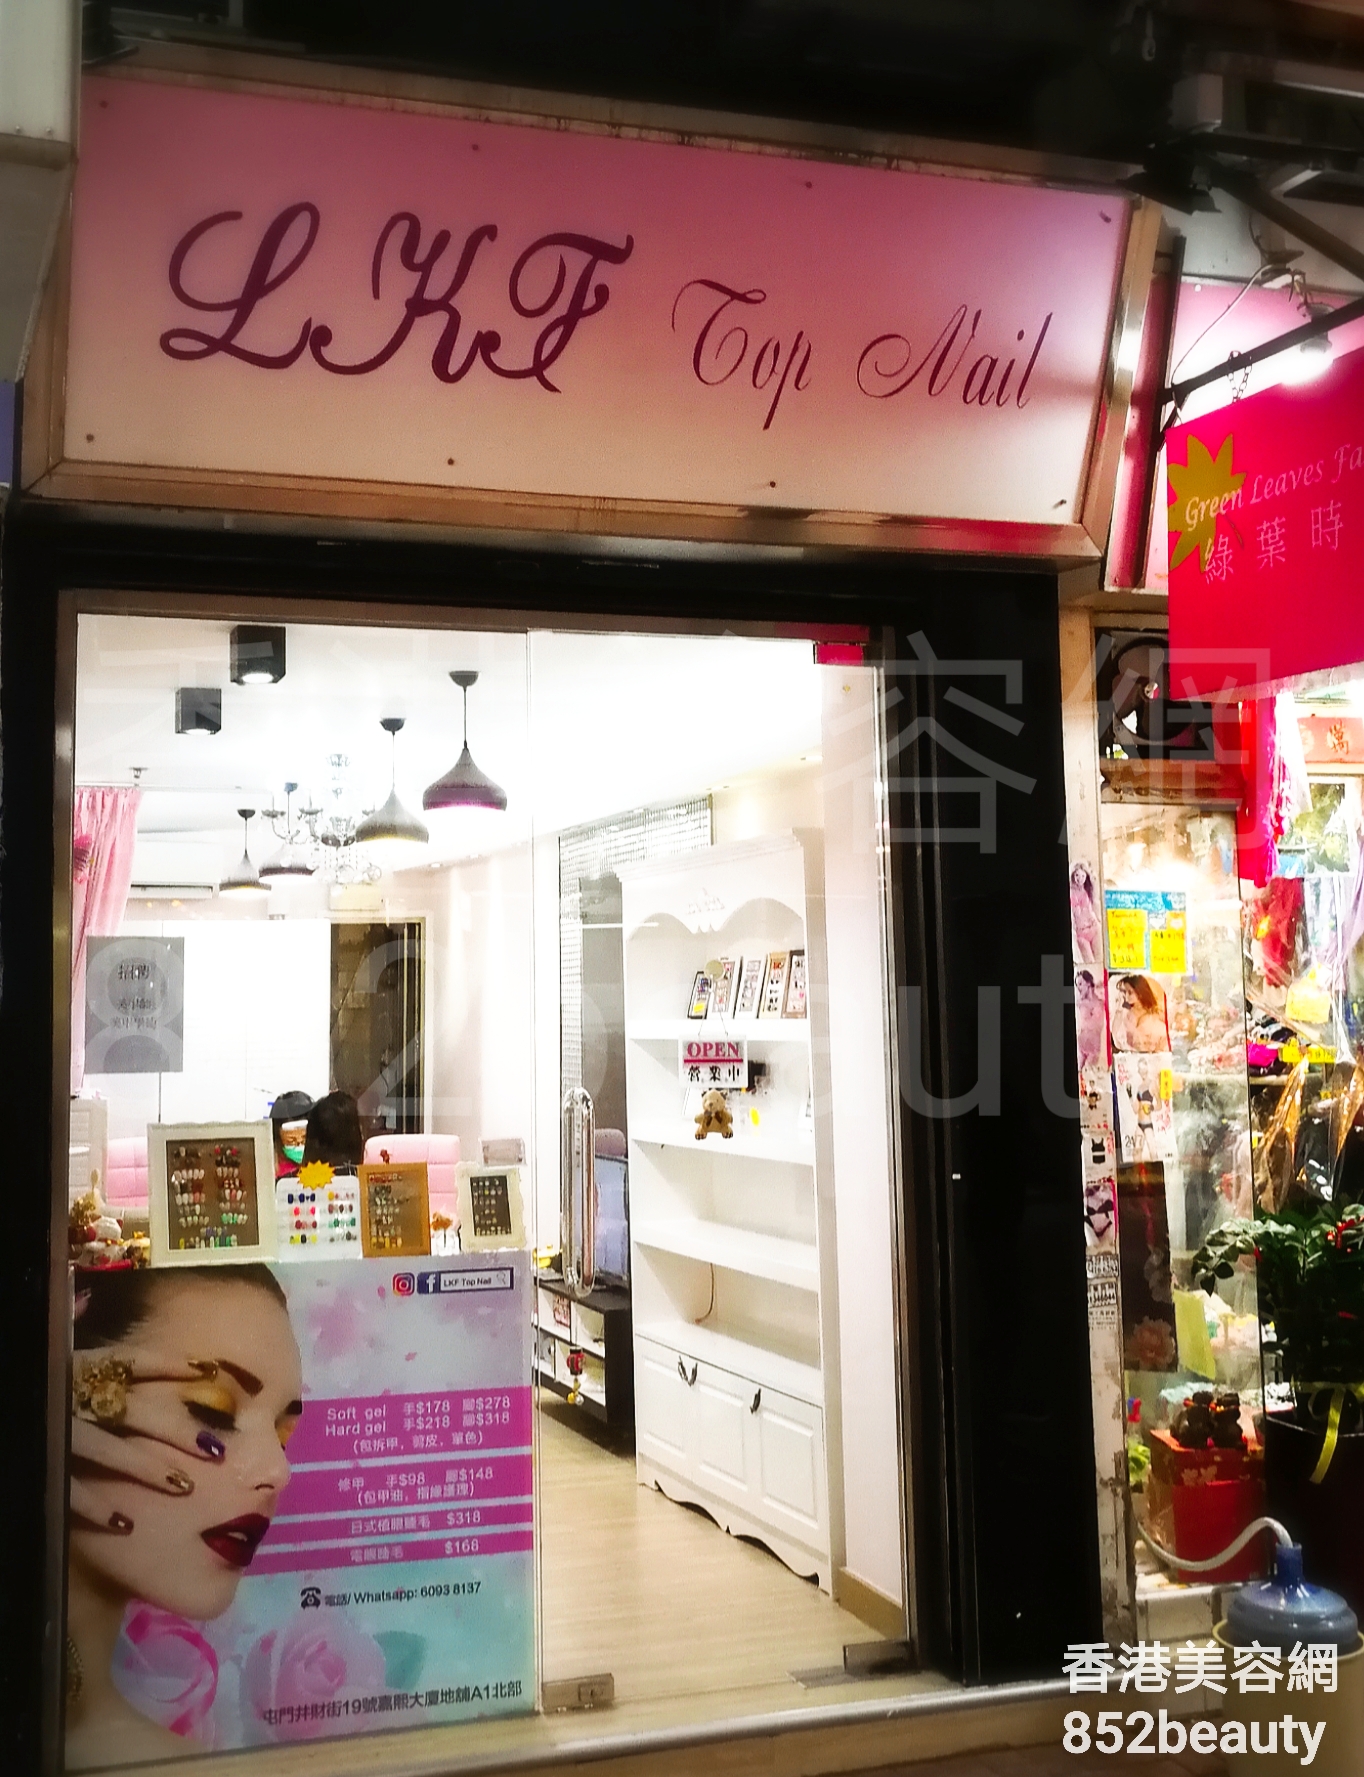 香港美容網 Hong Kong Beauty Salon 美容院 / 美容師: LKF Top Nail